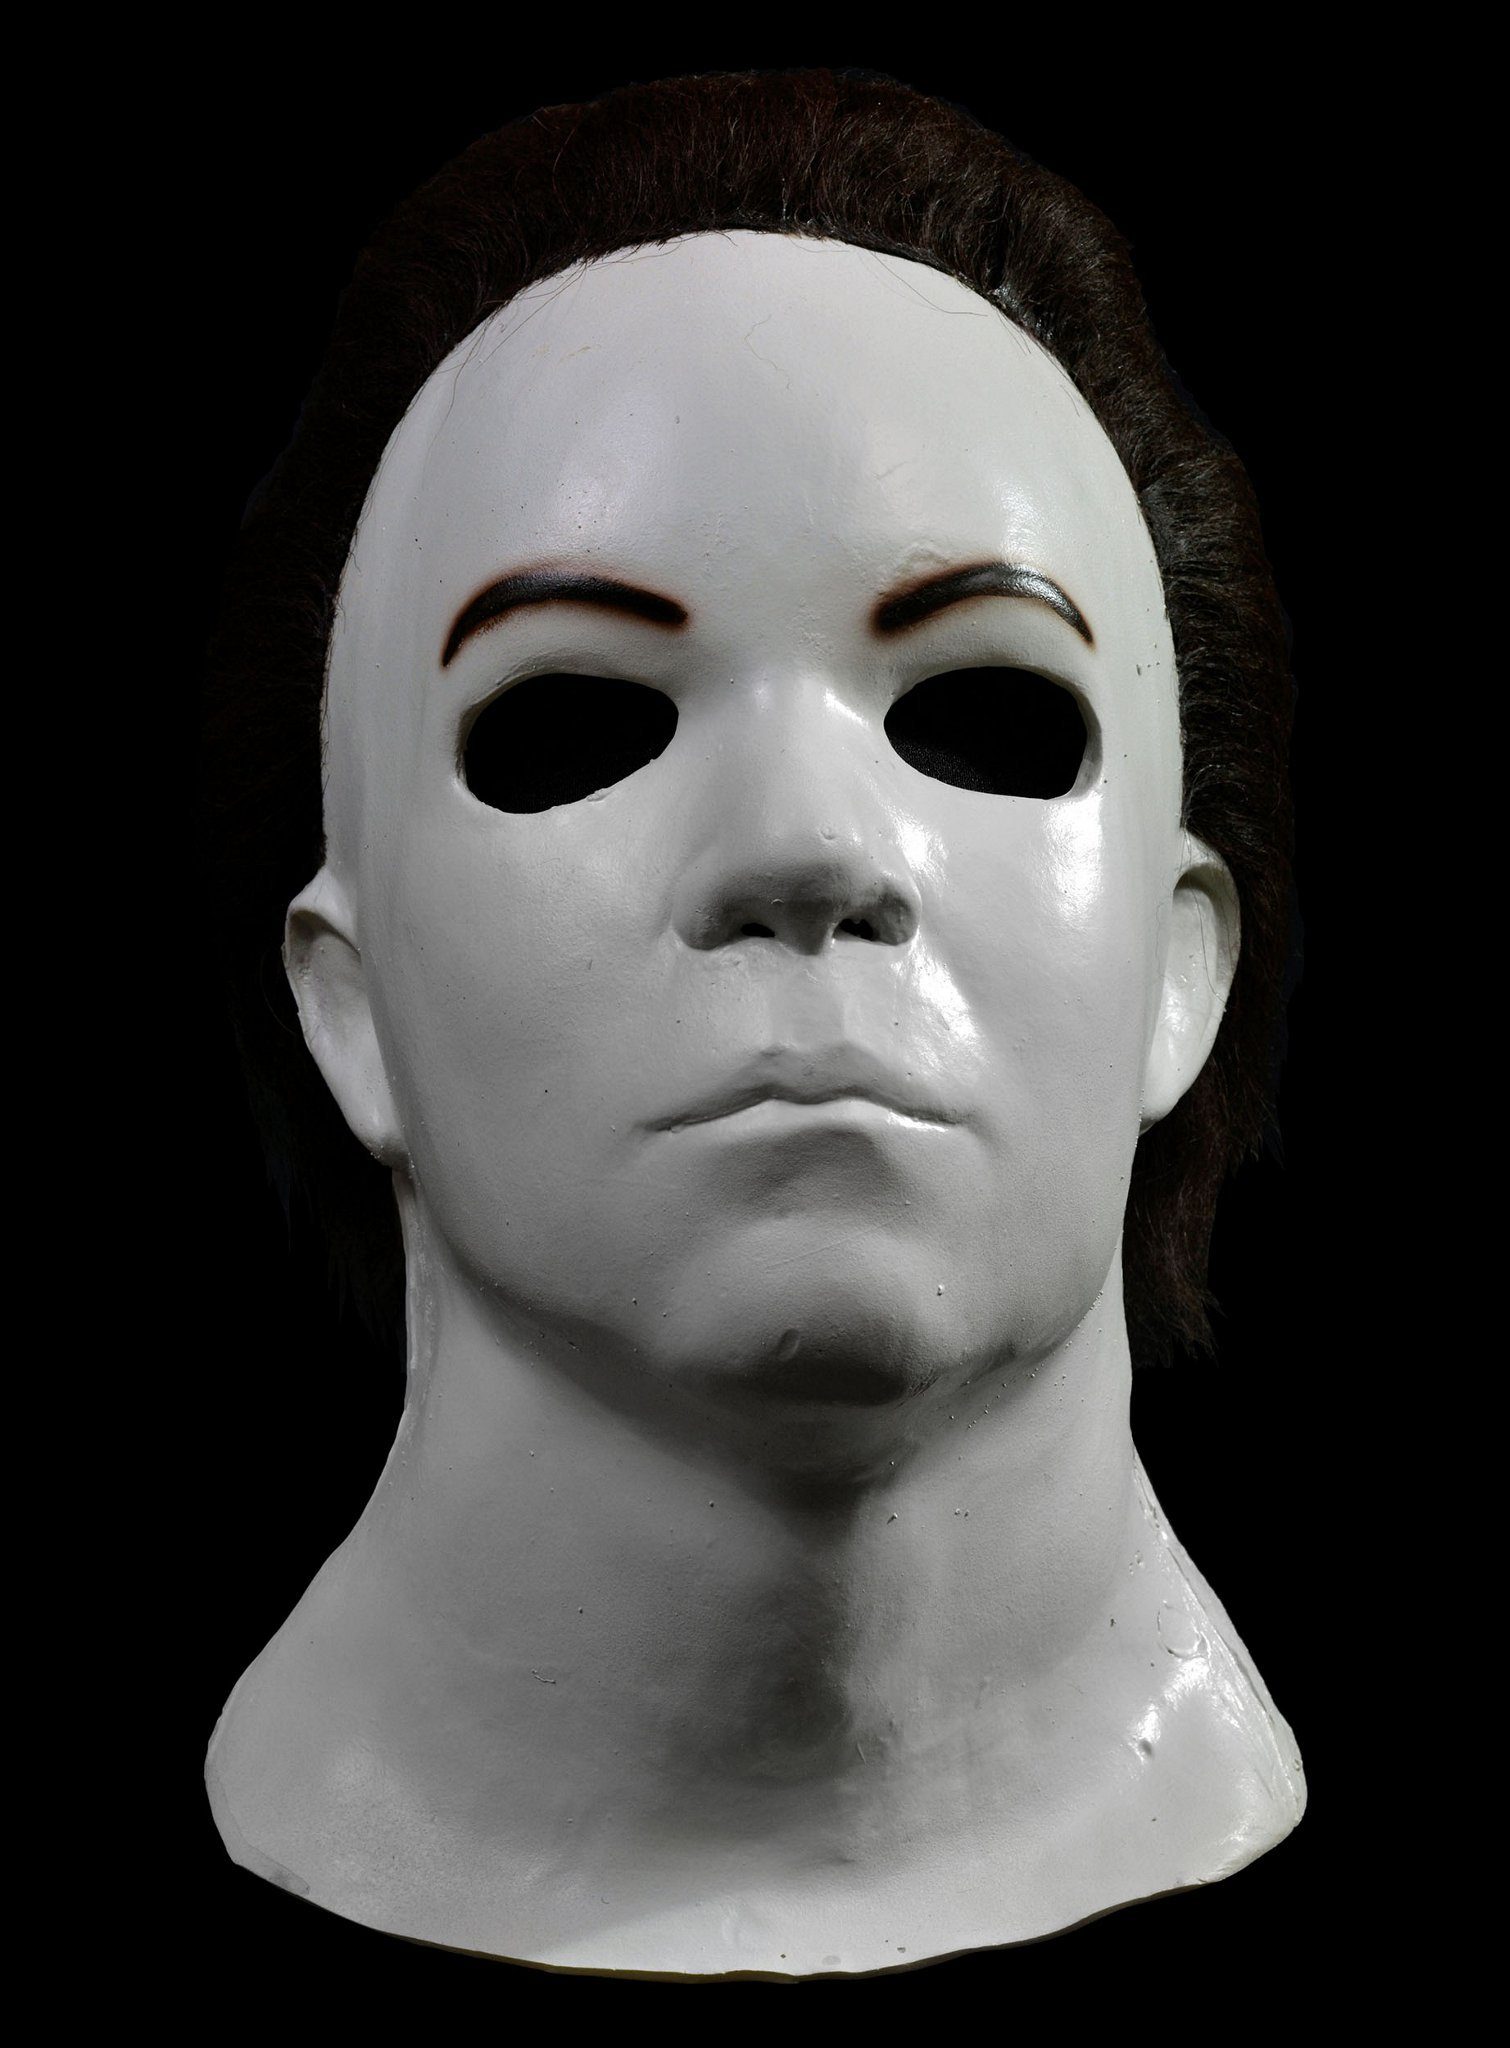 Trick or Treat Verkleidungsmaske Halloween H20 Michael Myers Typ 2, Original lizenzierte Maske aus 'Halloween H20 - 20 Jahre später' (199